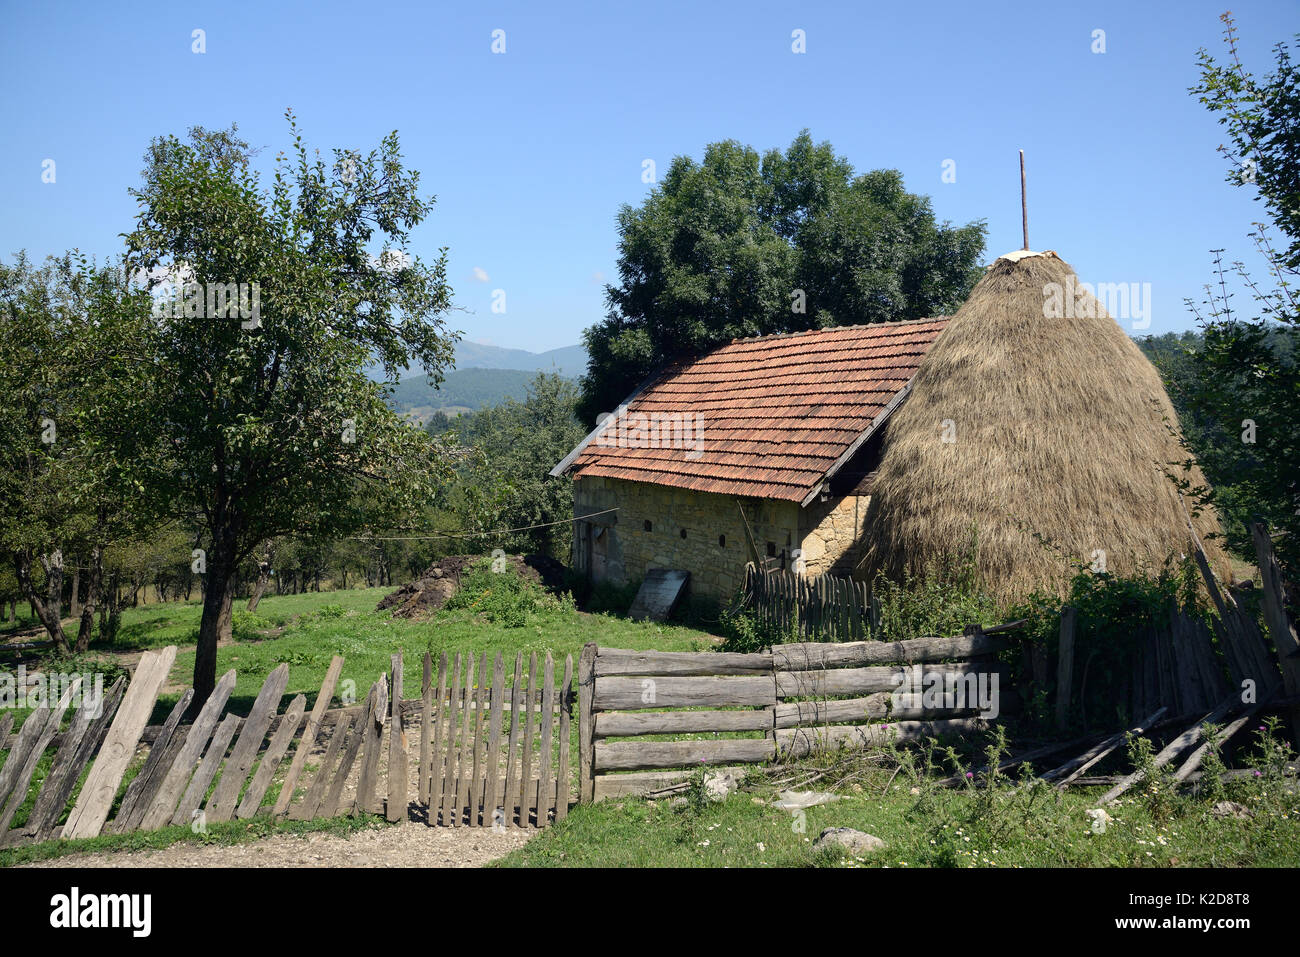 Traditionelle Ferienhaus und Haystack in Bergdorf, in der Nähe von Foca, Bosnien und Herzegowina, Juli 2014. Stockfoto